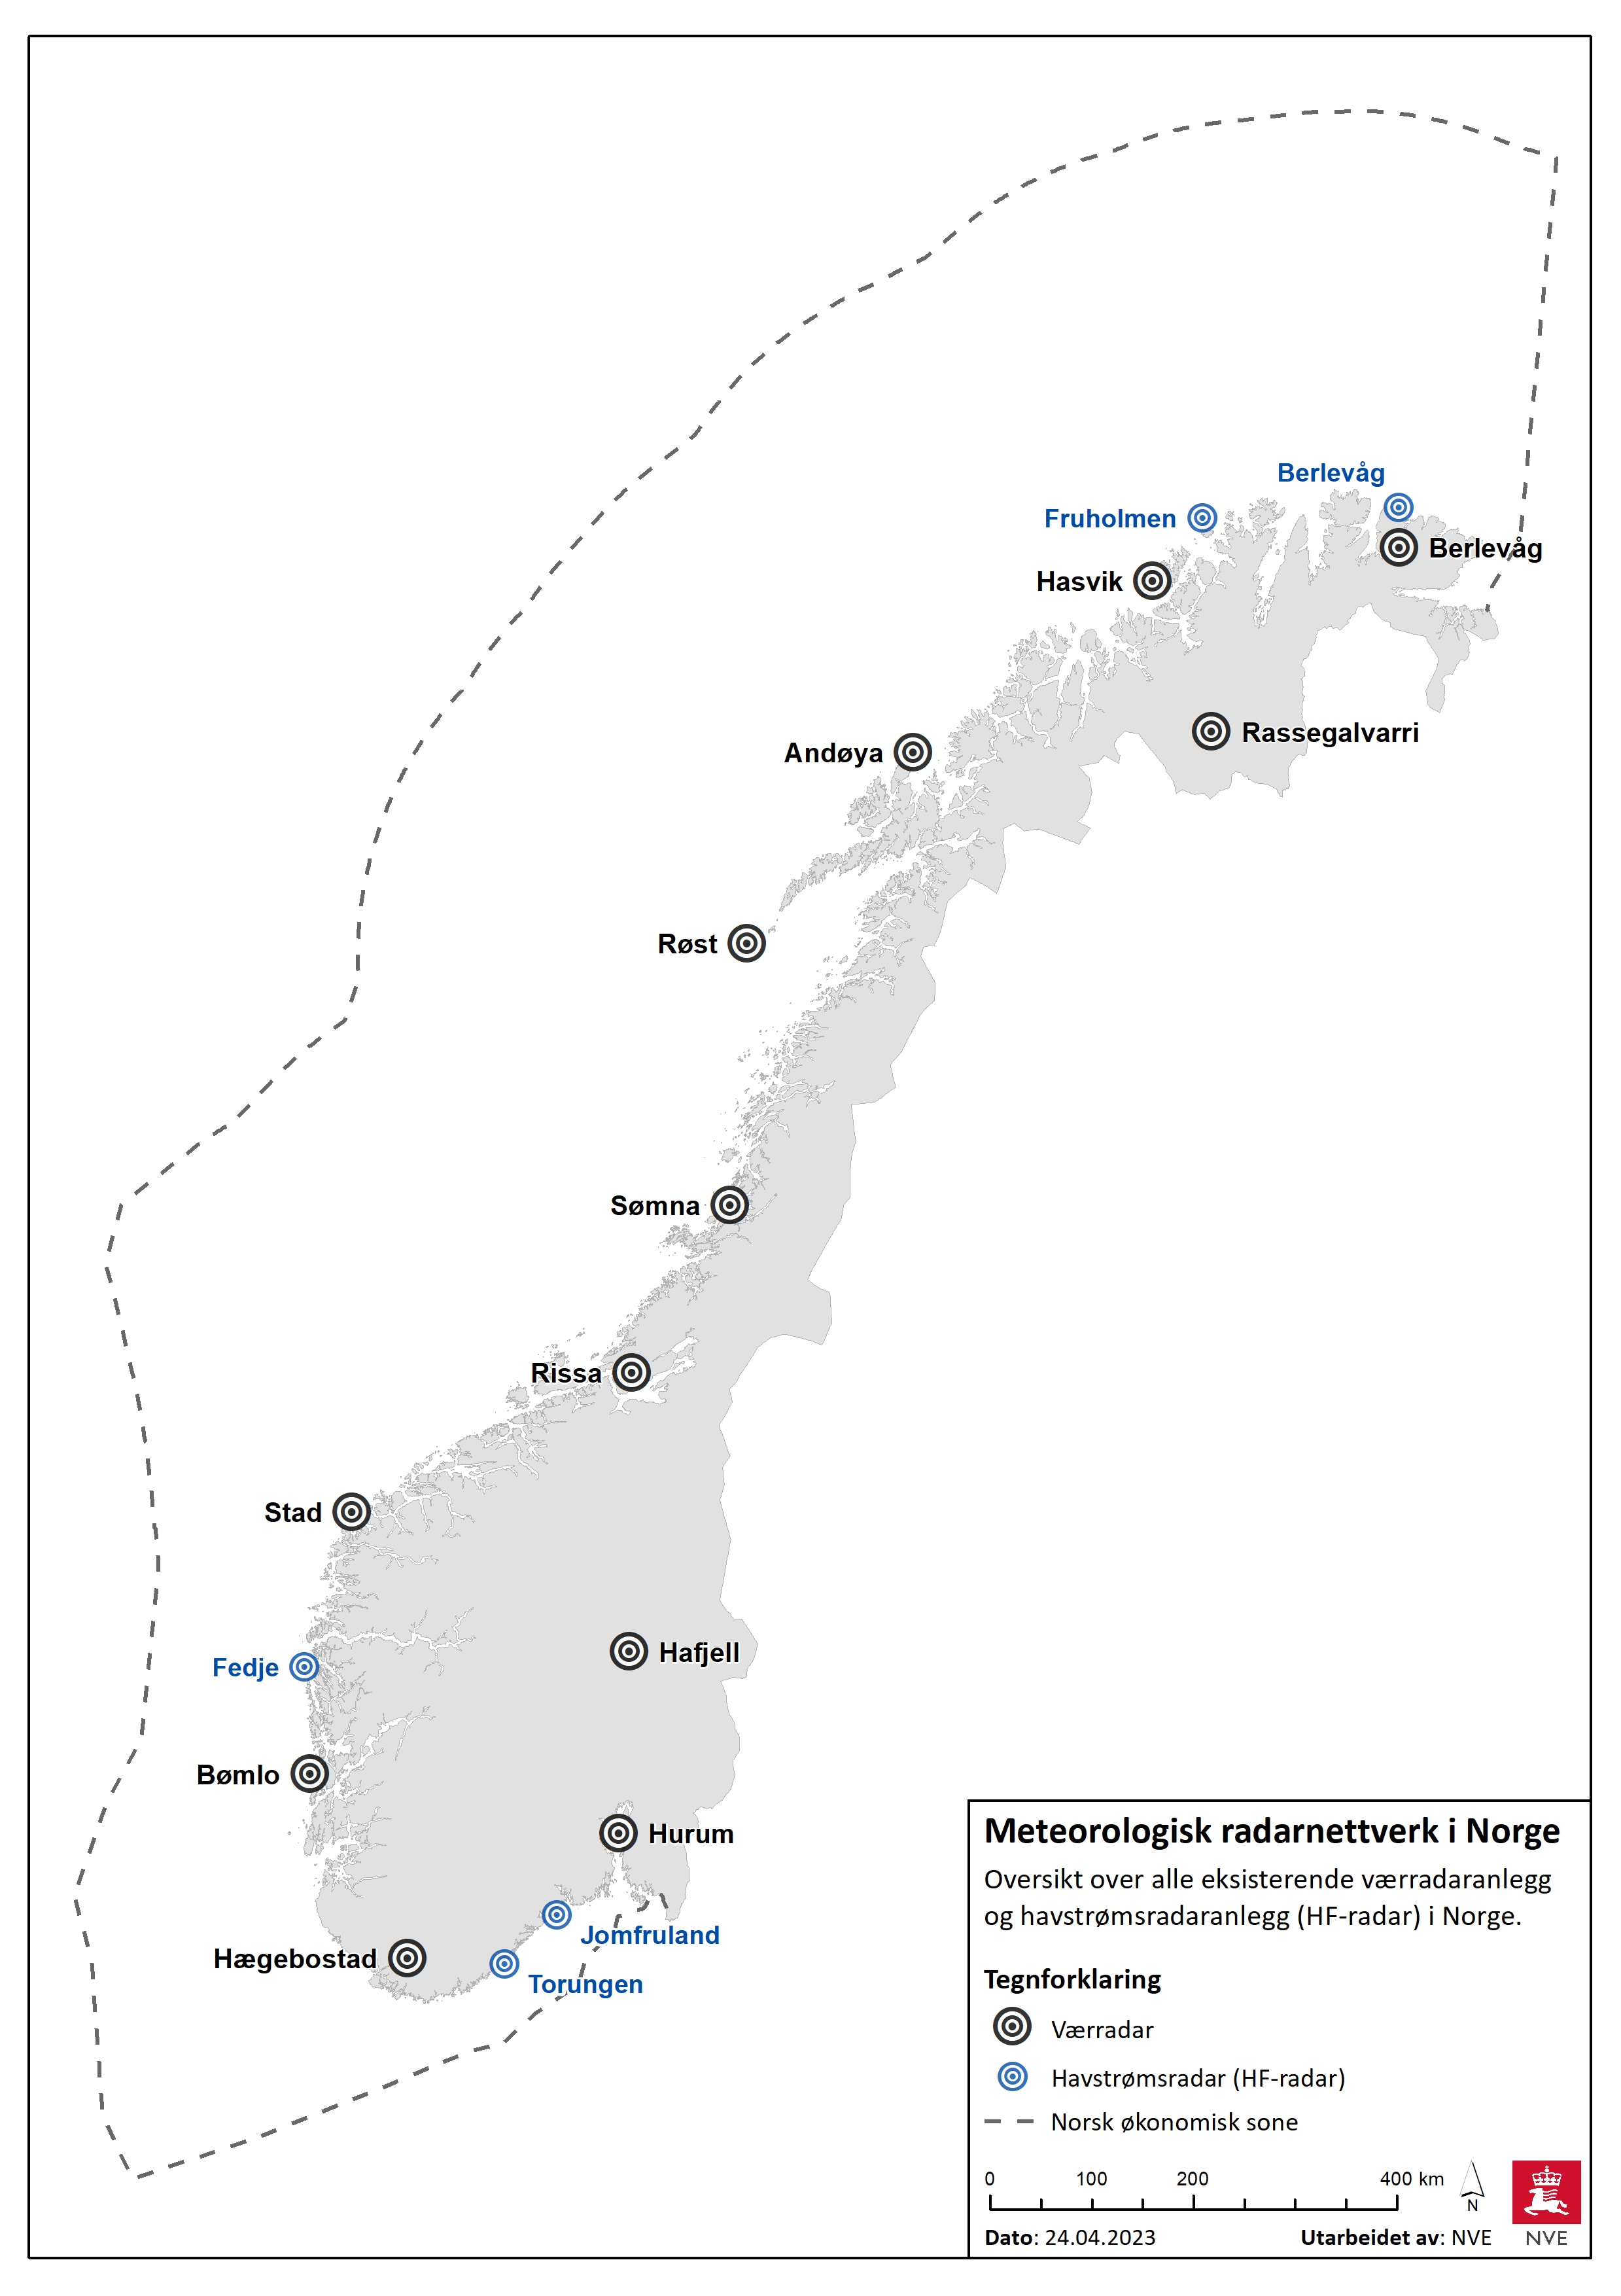 Meteorologisk radarnettverk i Norge.